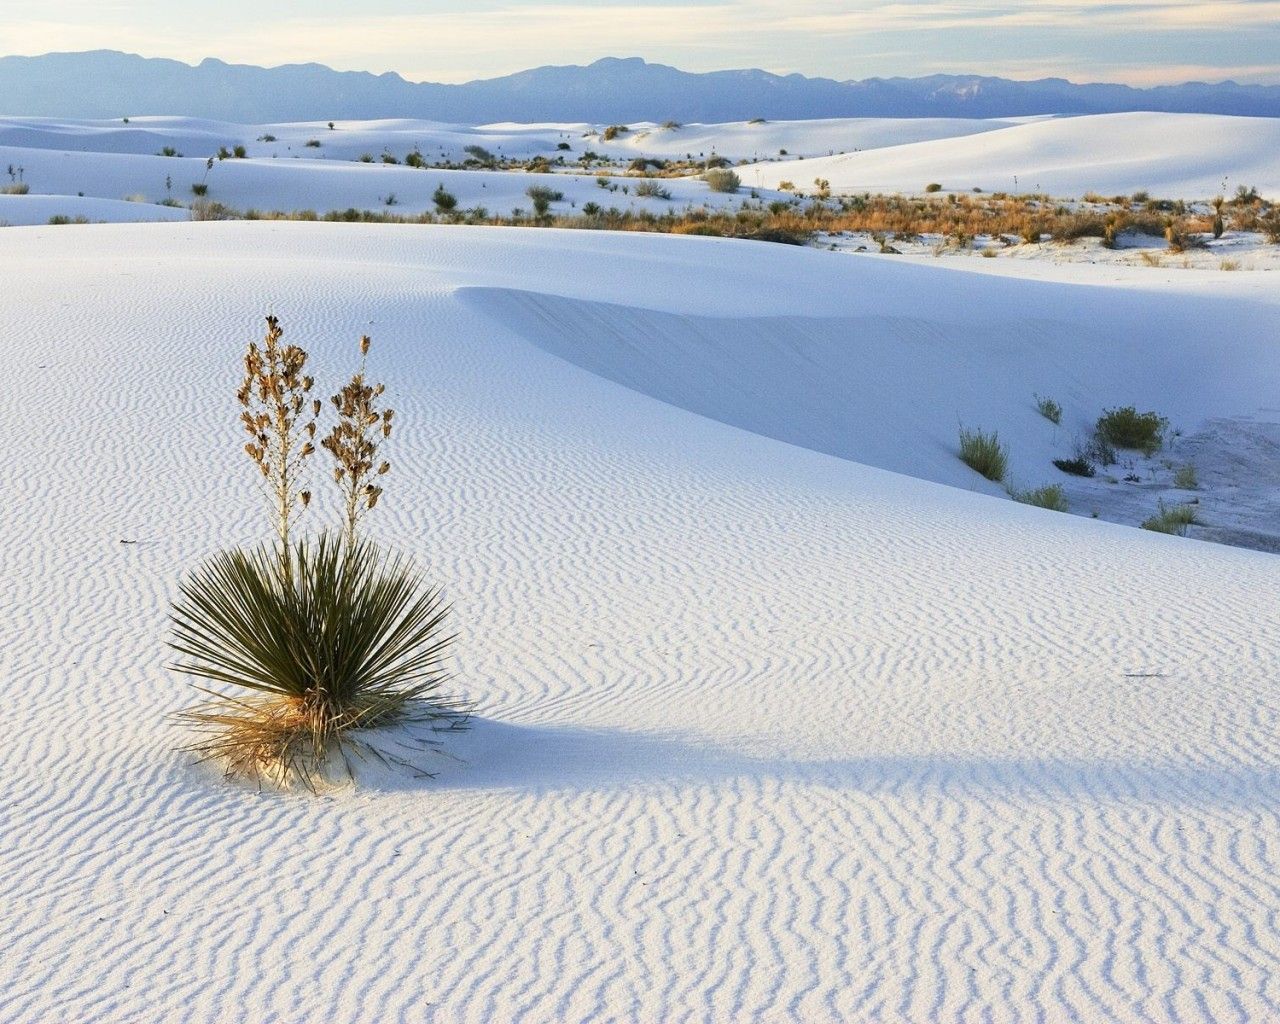 近半米積雪覆蓋黃沙